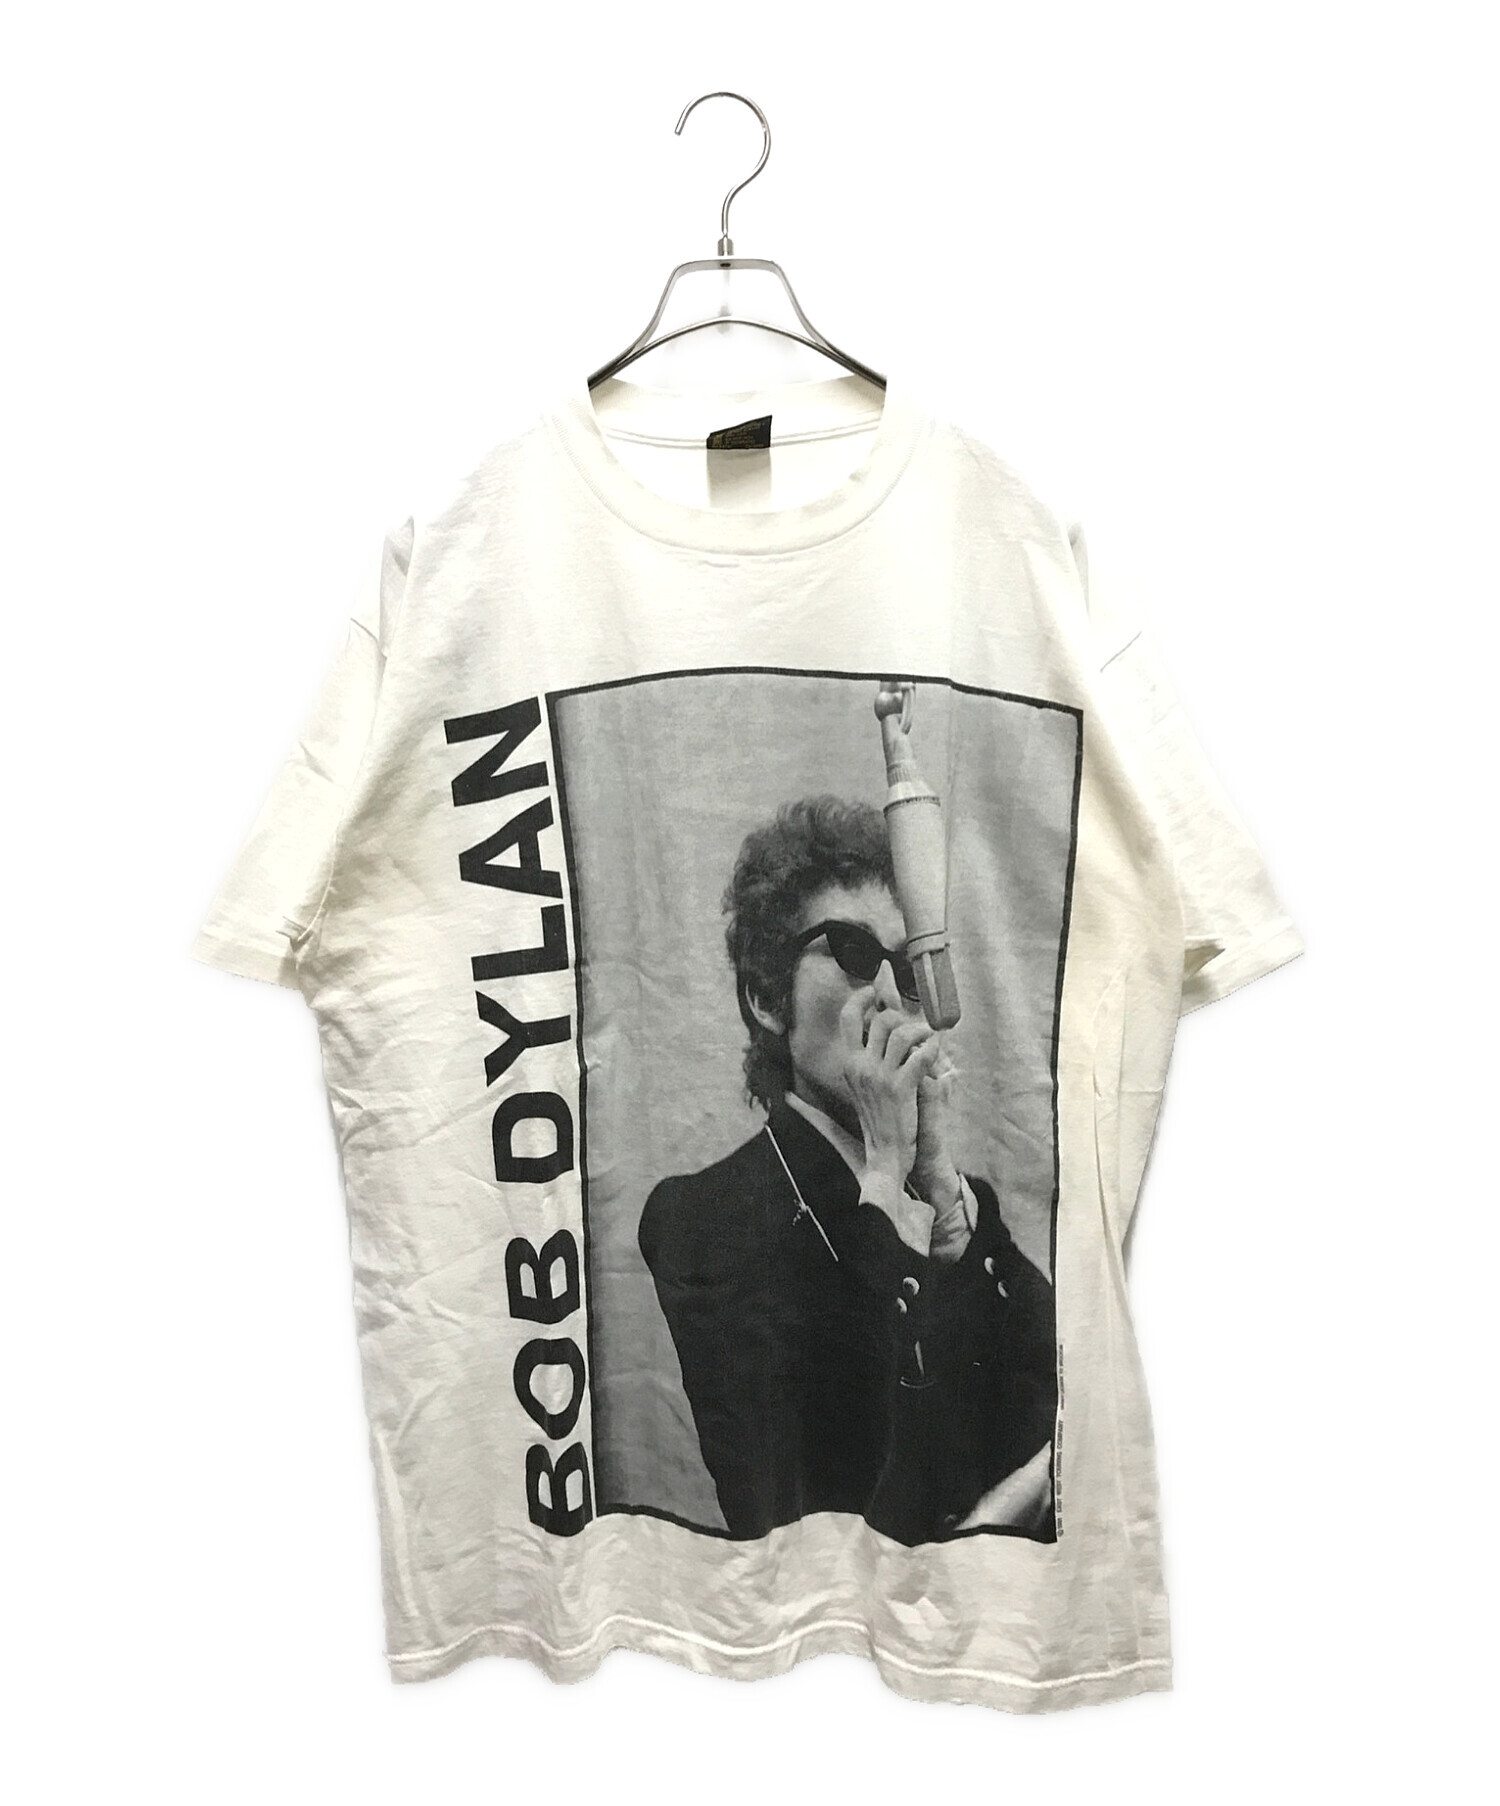 ★1988 BOB DYLAN ボブディラン Tシャツ(XL)ヴィンテージカラー黒